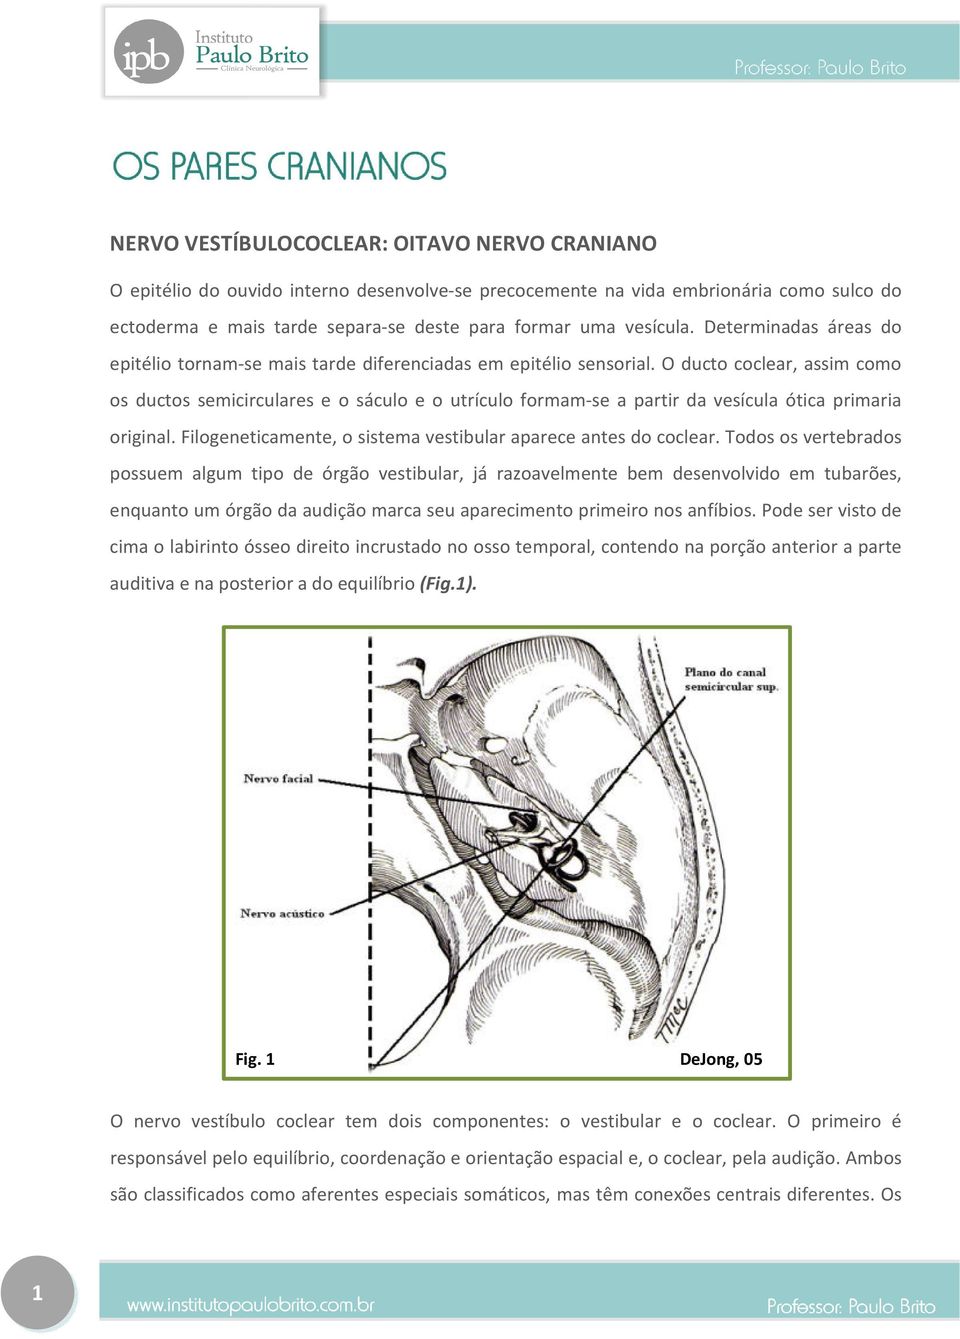 O ducto coclear, assim como os ductos semicirculares e o sáculo e o utrículo formam-se a partir da vesícula ótica primaria original. Filogeneticamente, o sistema vestibular aparece antes do coclear.